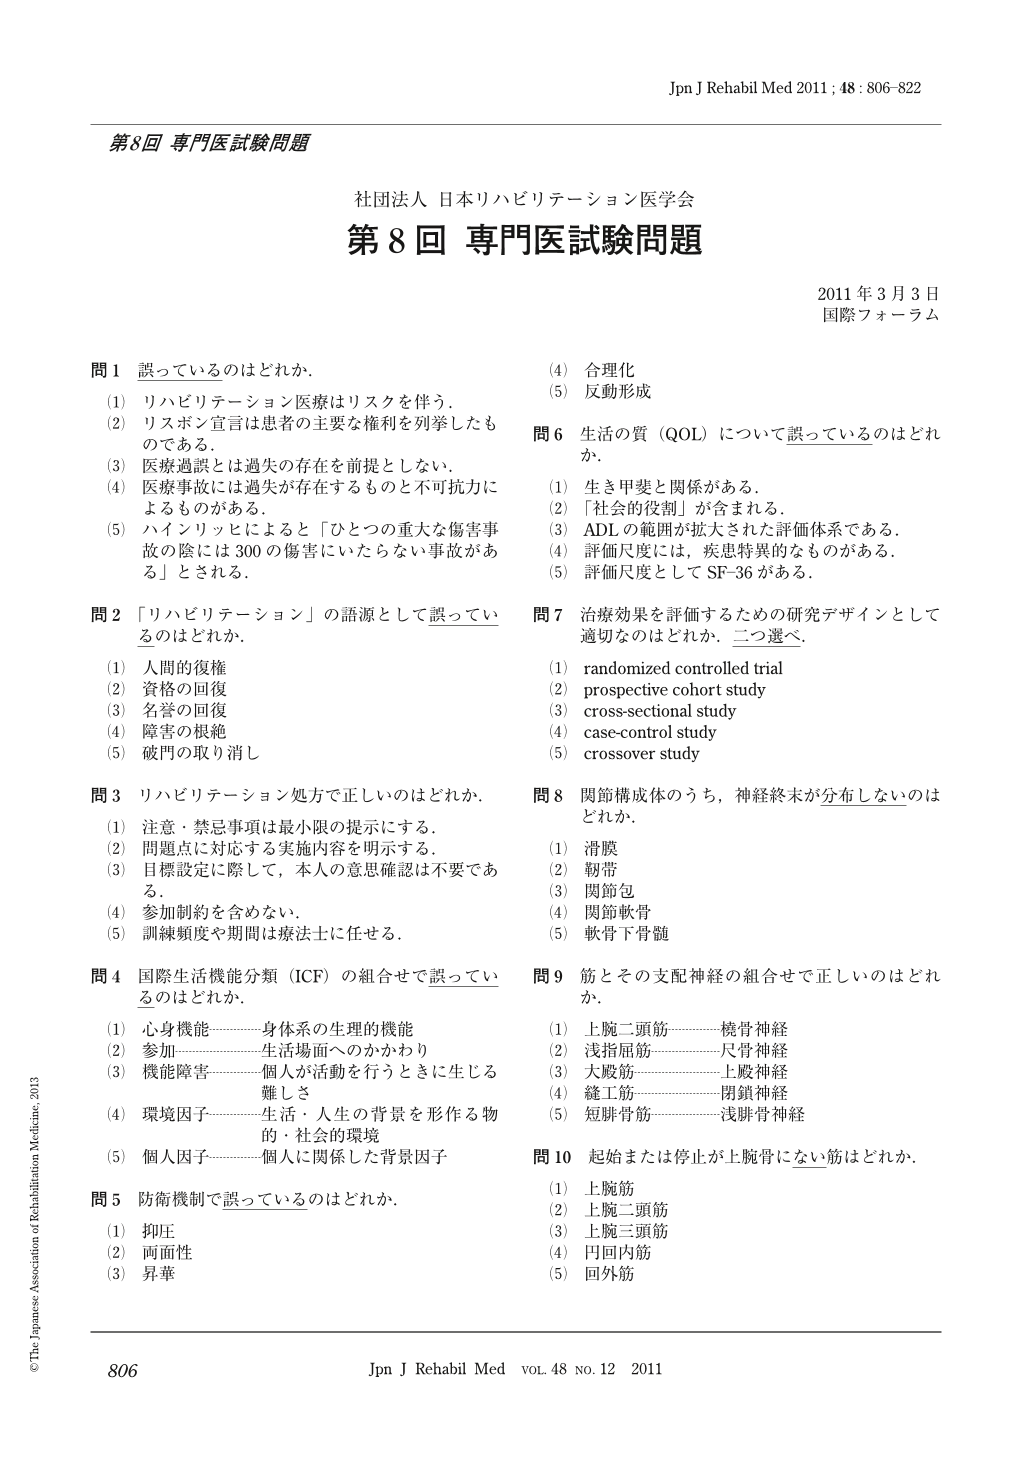 第8回 専門医試験問題 (The Japanese Journal of Rehabilitation